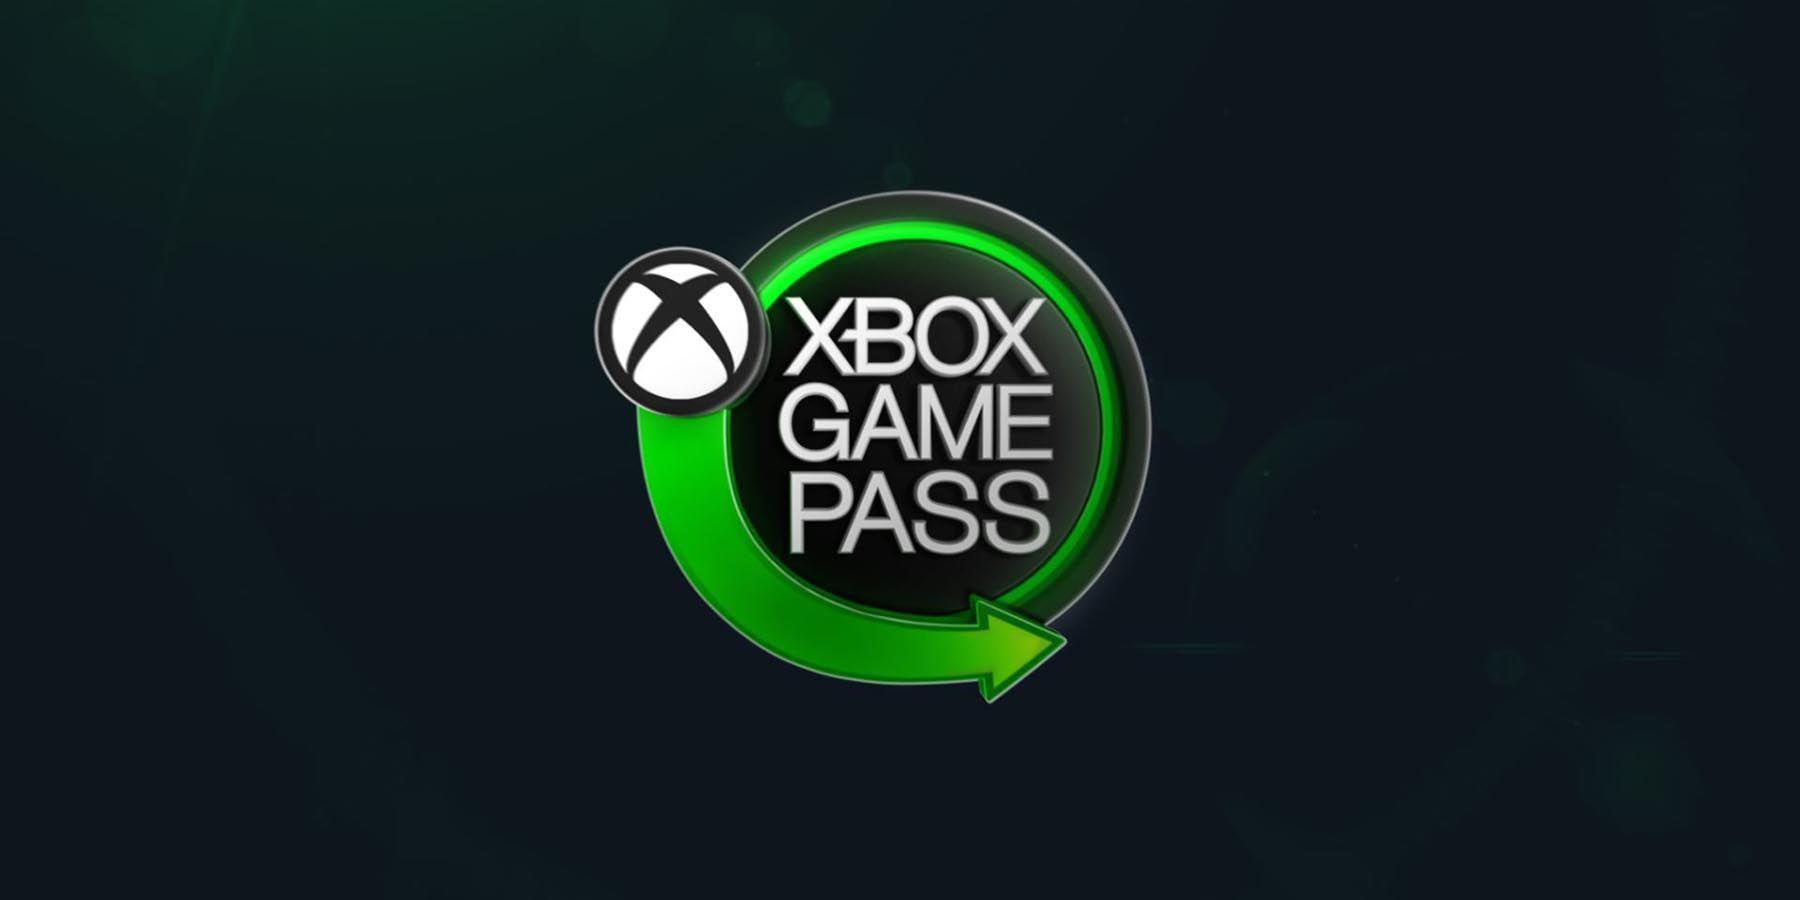 O Steam Deck precisa de um aplicativo Xbox Game Pass dedicado